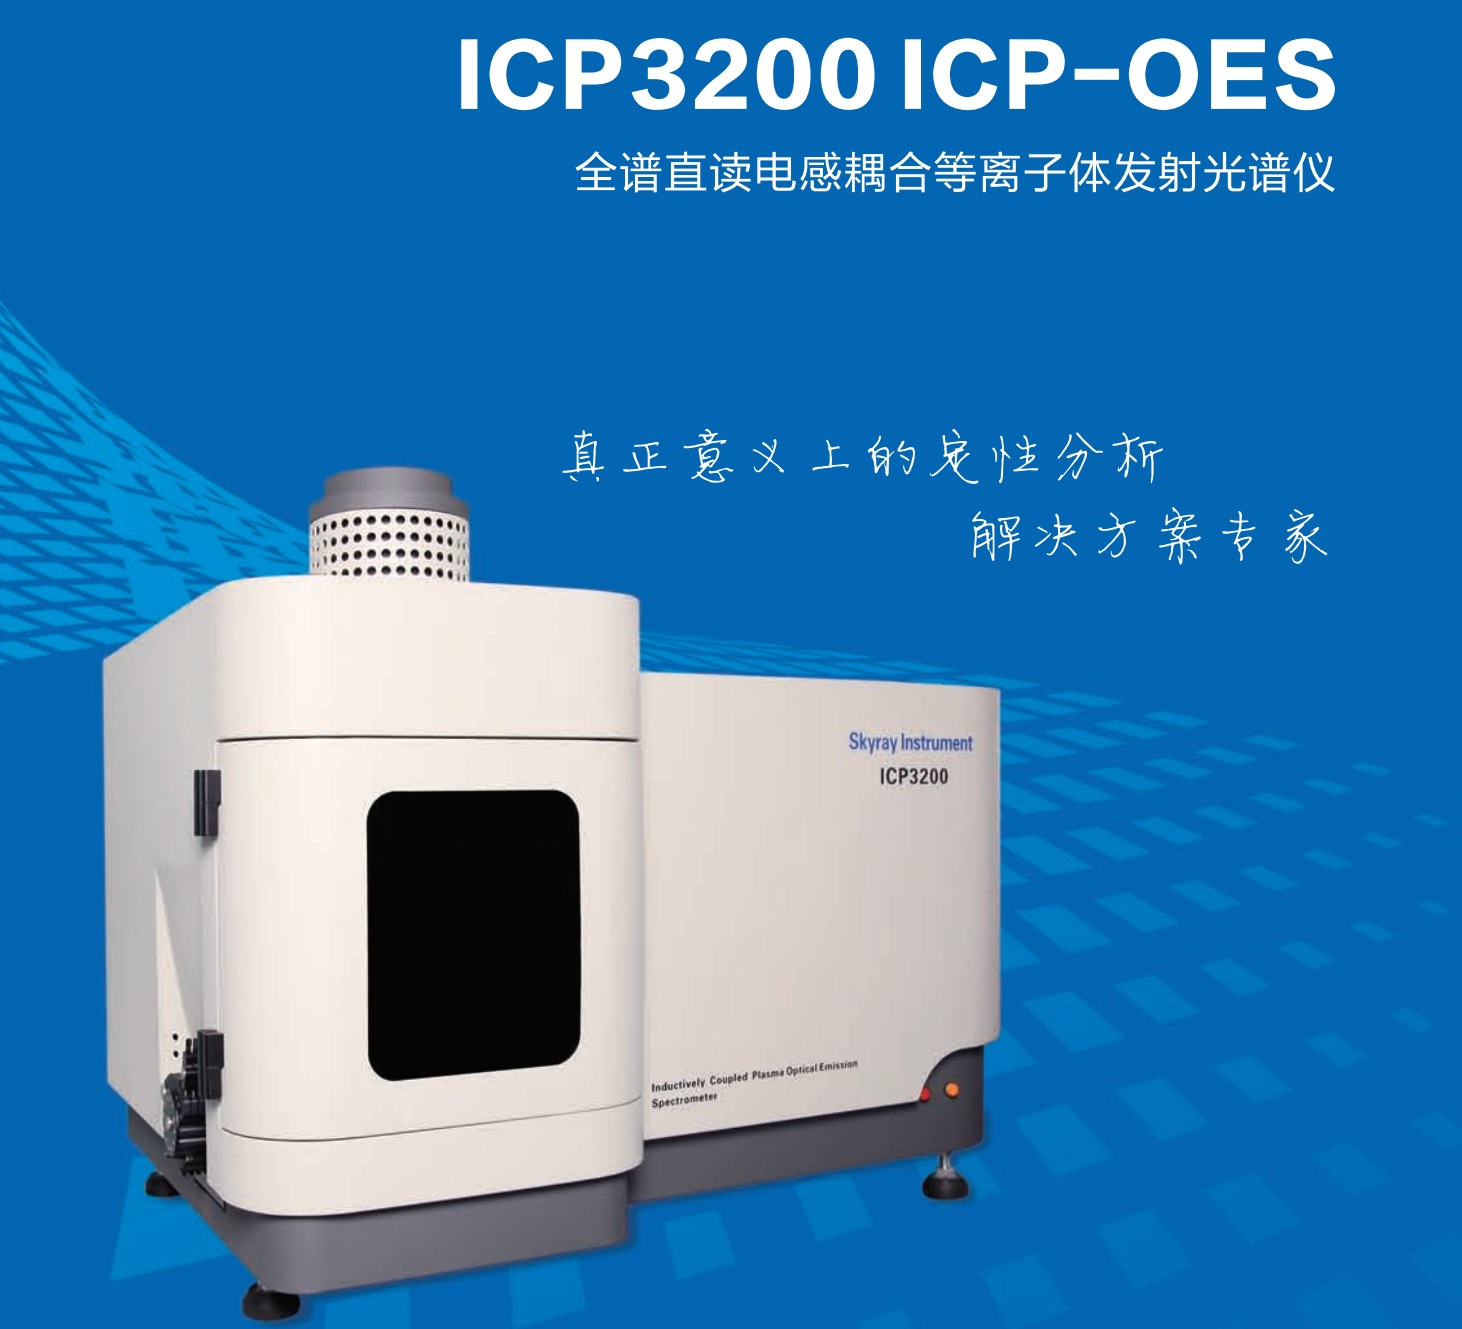 江苏天瑞仪器股份有限公司-ICP 3200 ICP-OES